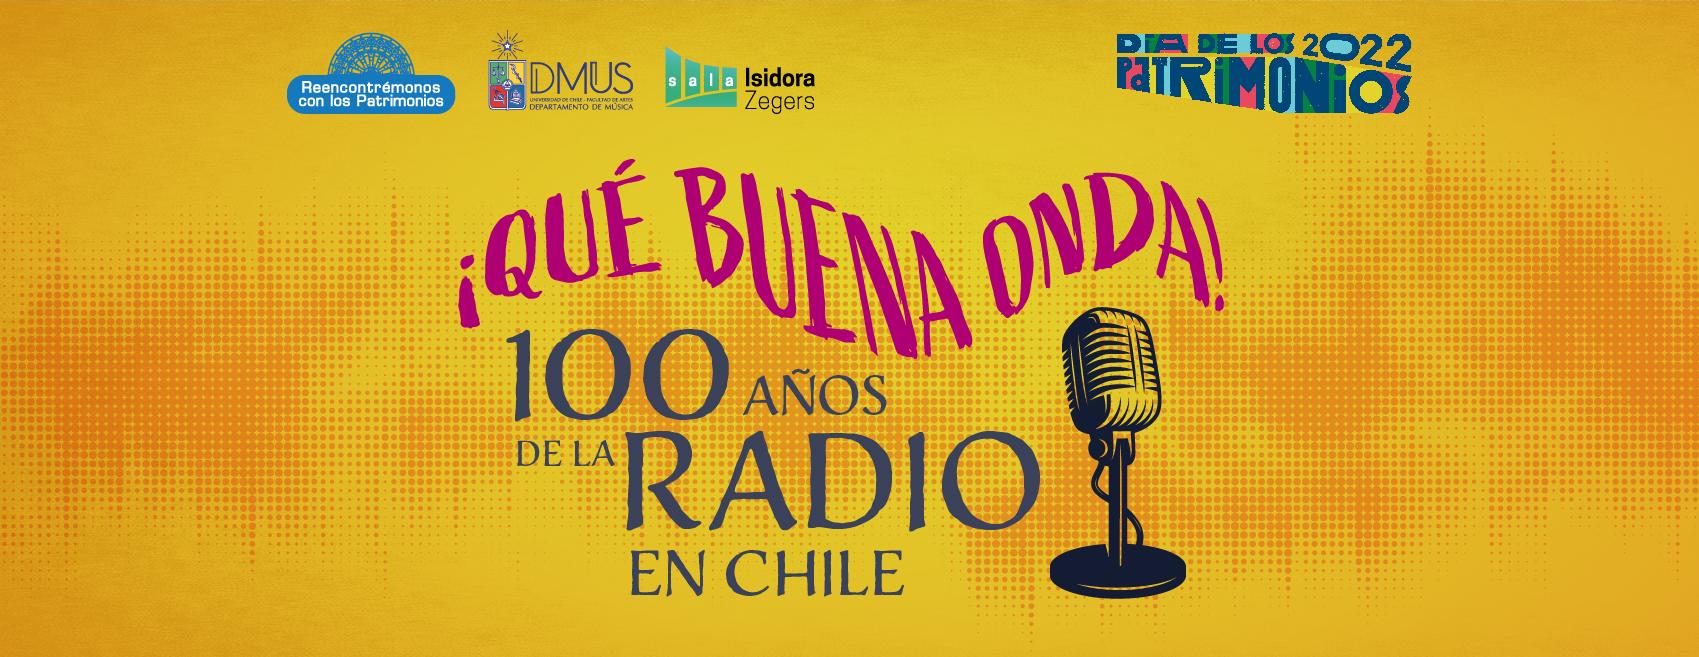 Departamento de Música conmemora los cien años de la radio en Chile